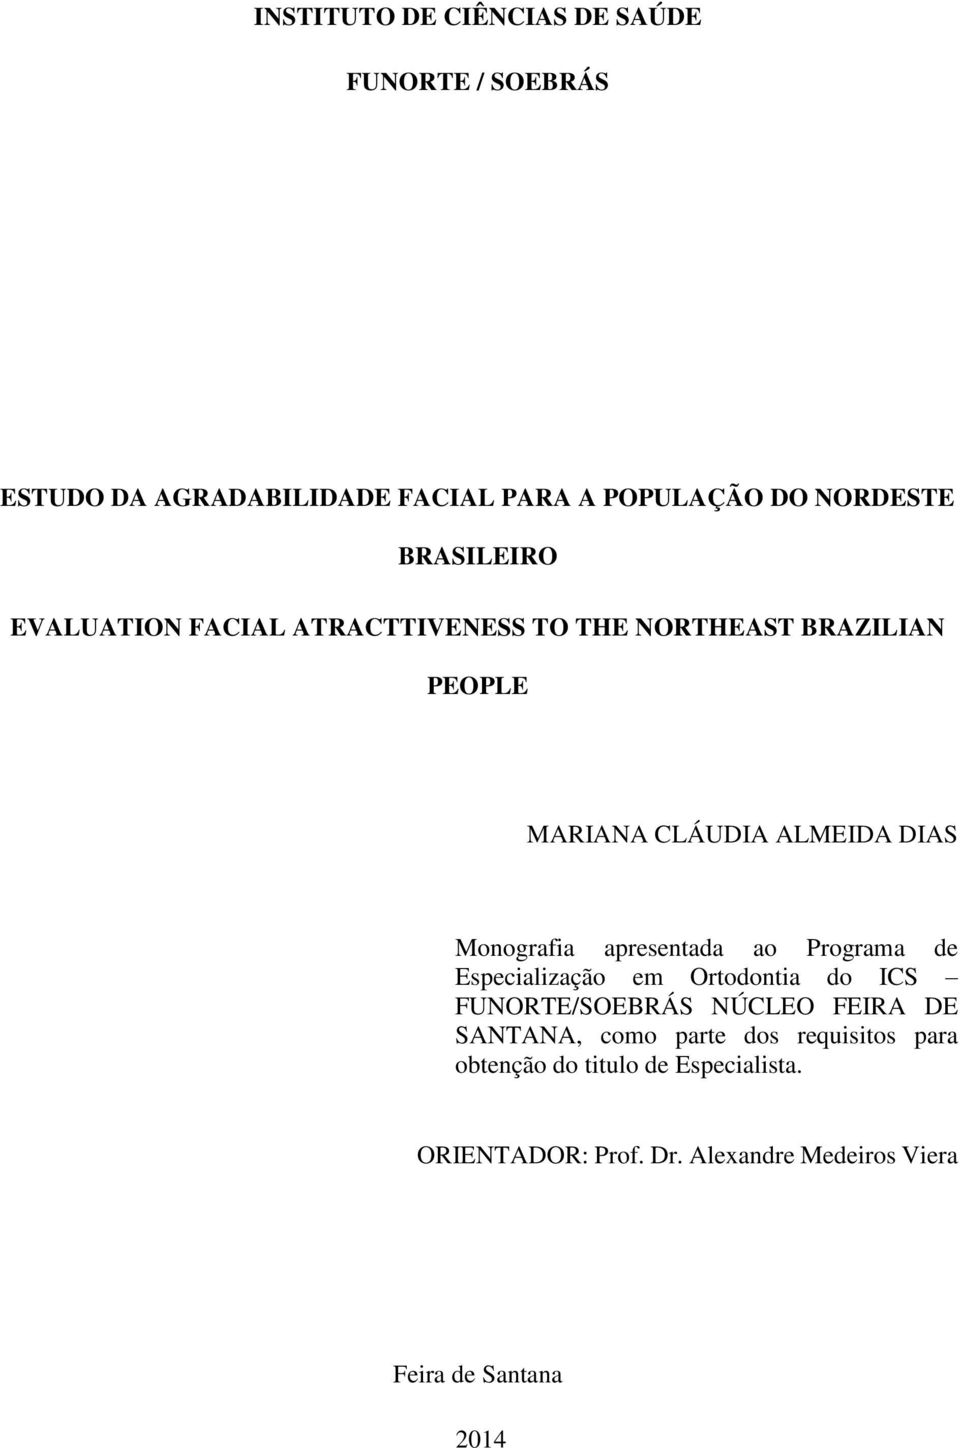 Monografia apresentada ao Programa de Especialização em Ortodontia do ICS FUNORTE/SOEBRÁS NÚCLEO FEIRA DE SANTANA,